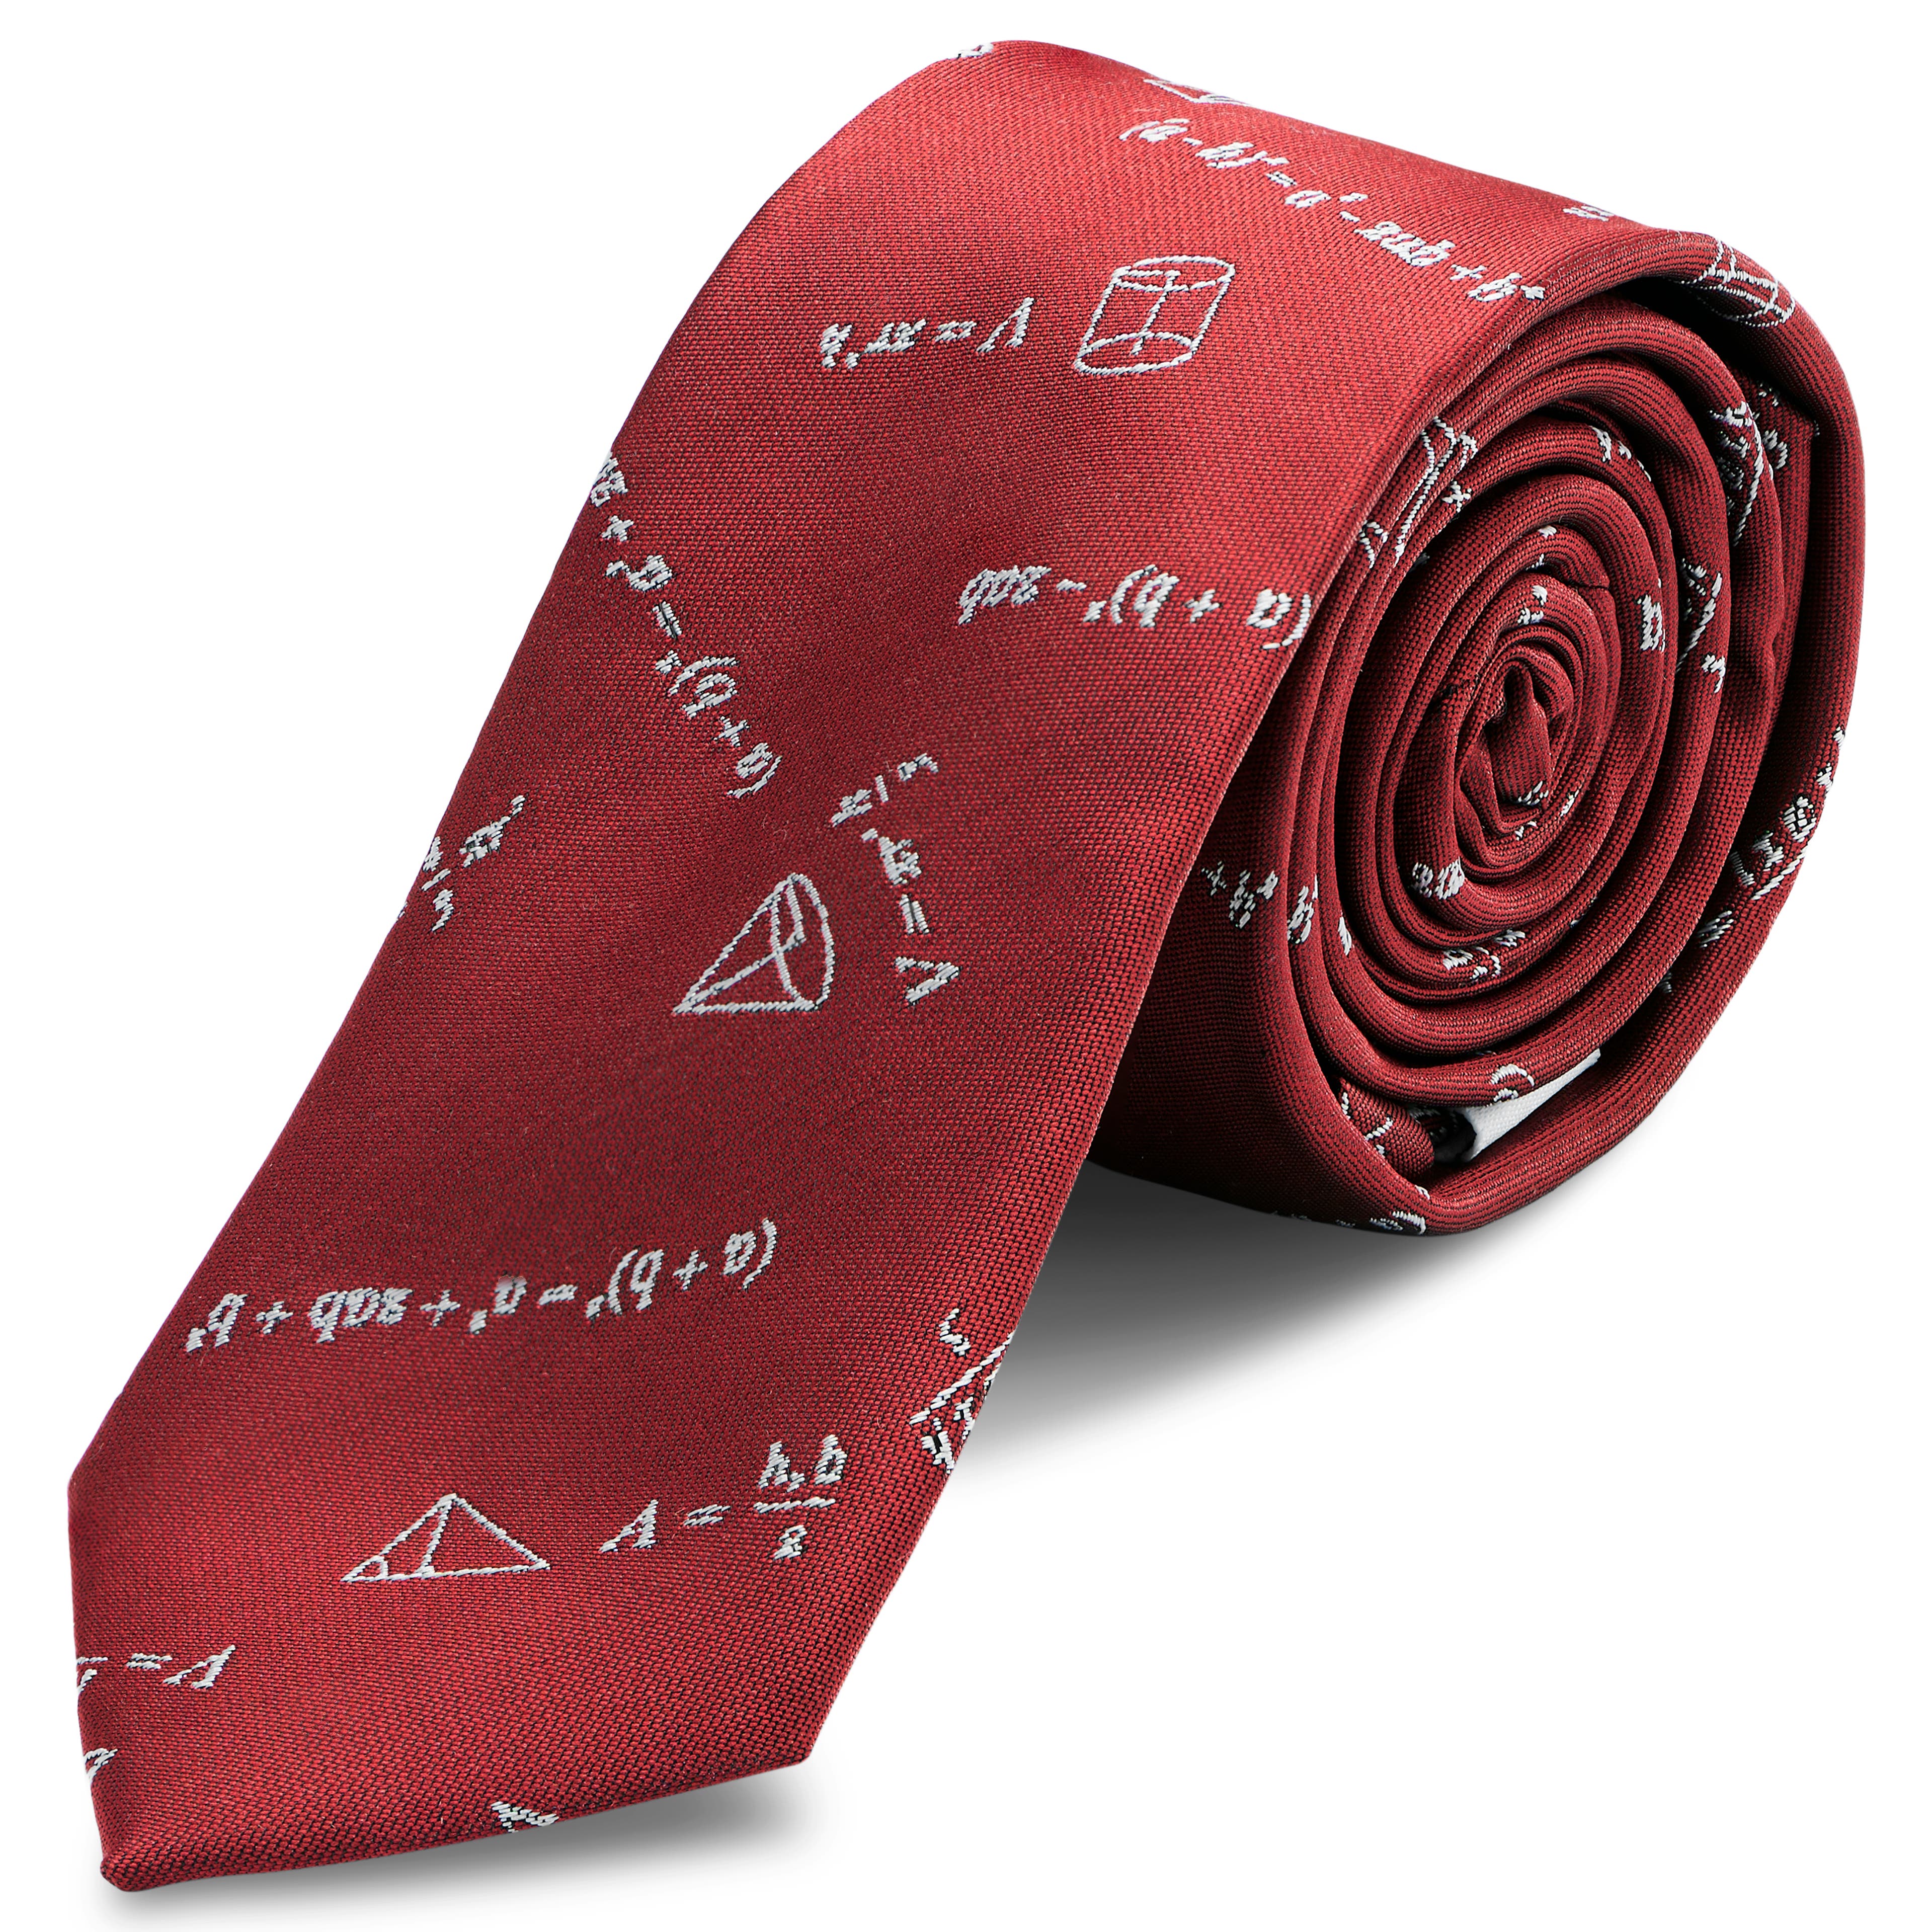 Corbata estrecha burdeos con ecuaciones matemáticas